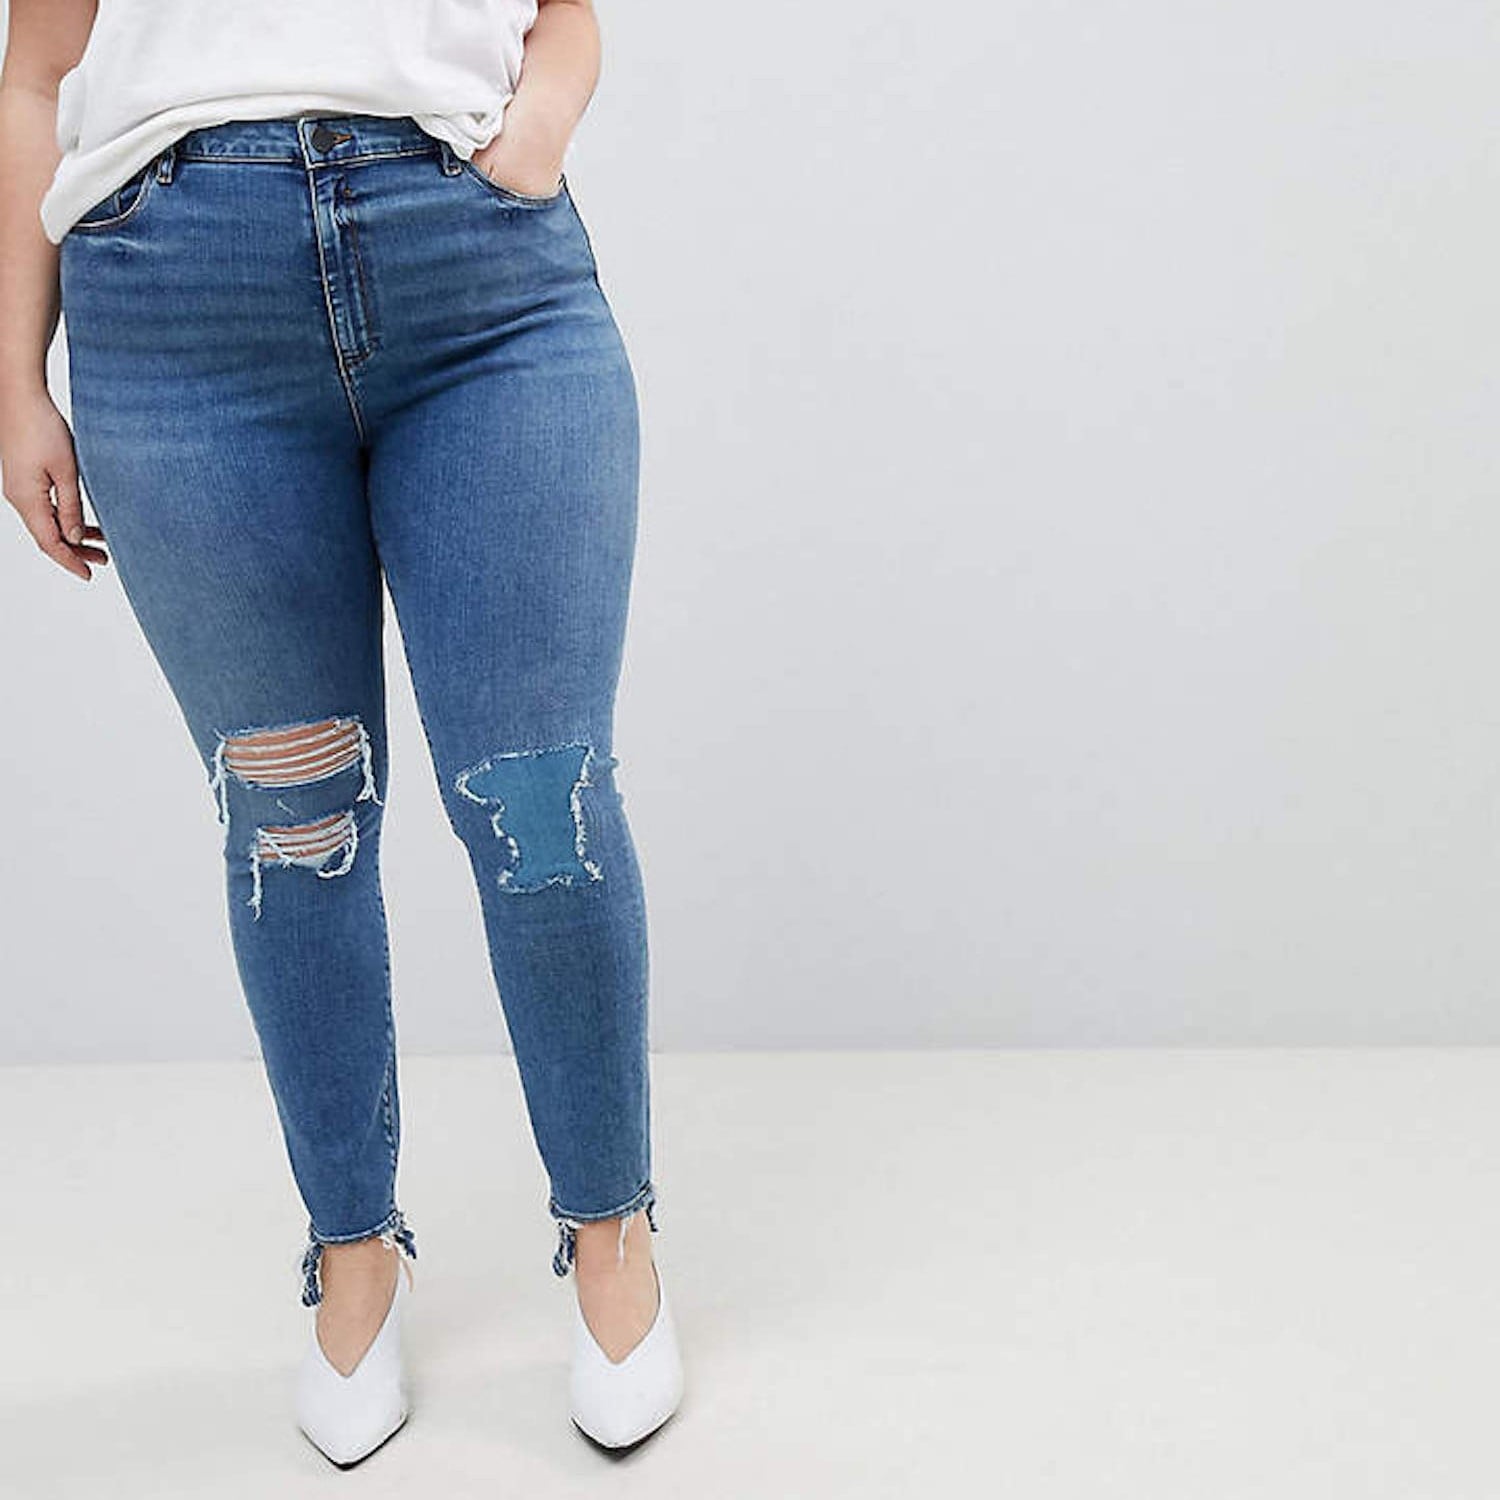 Regulering skelet justere Best Plus-Size Jeans 2018 | POPSUGAR Fashion